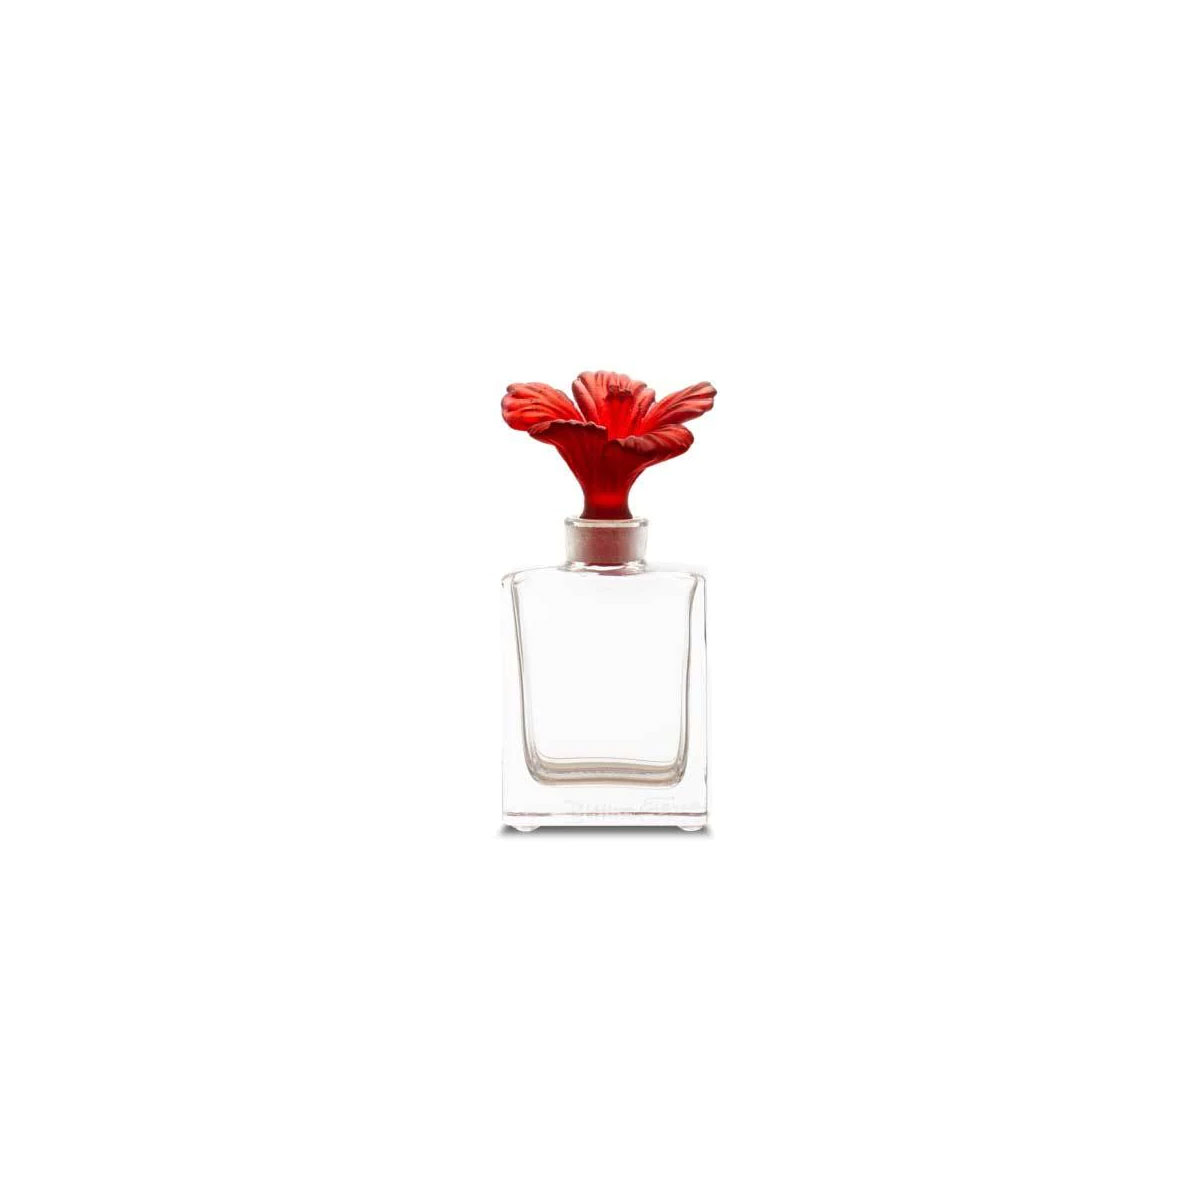 Daum Hibiscus Perfume Bottle